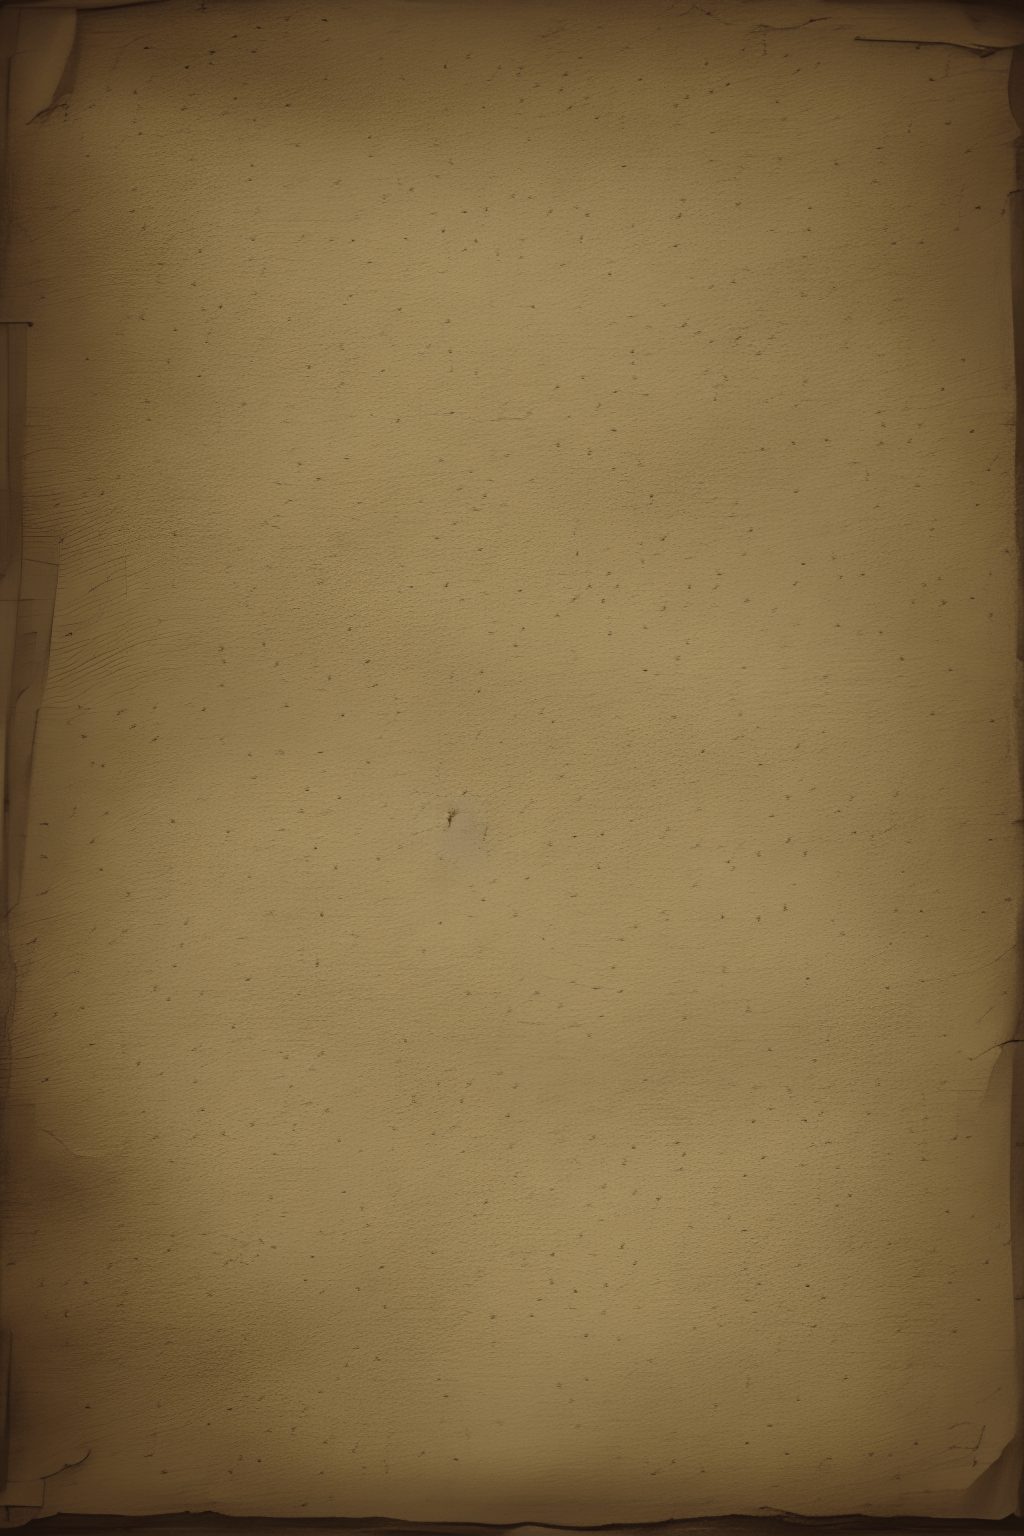 Vintage Parchment Paper Template Background